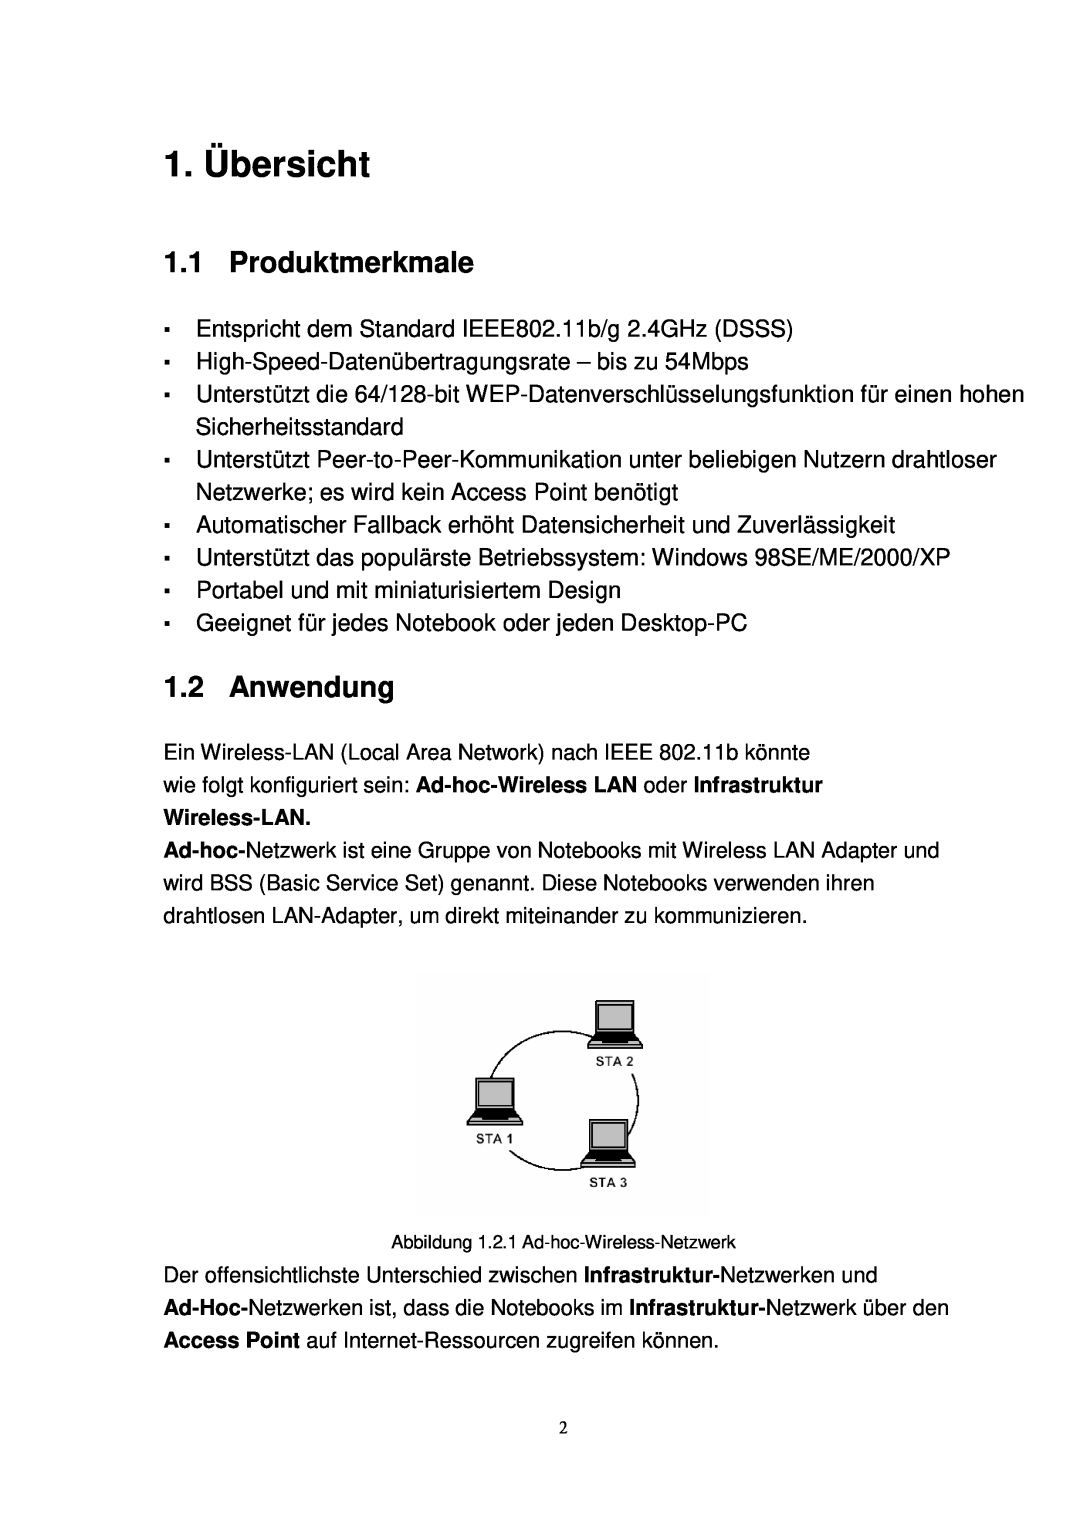 X-Micro Tech 11G manual 1. Übersicht, Produktmerkmale, Anwendung 